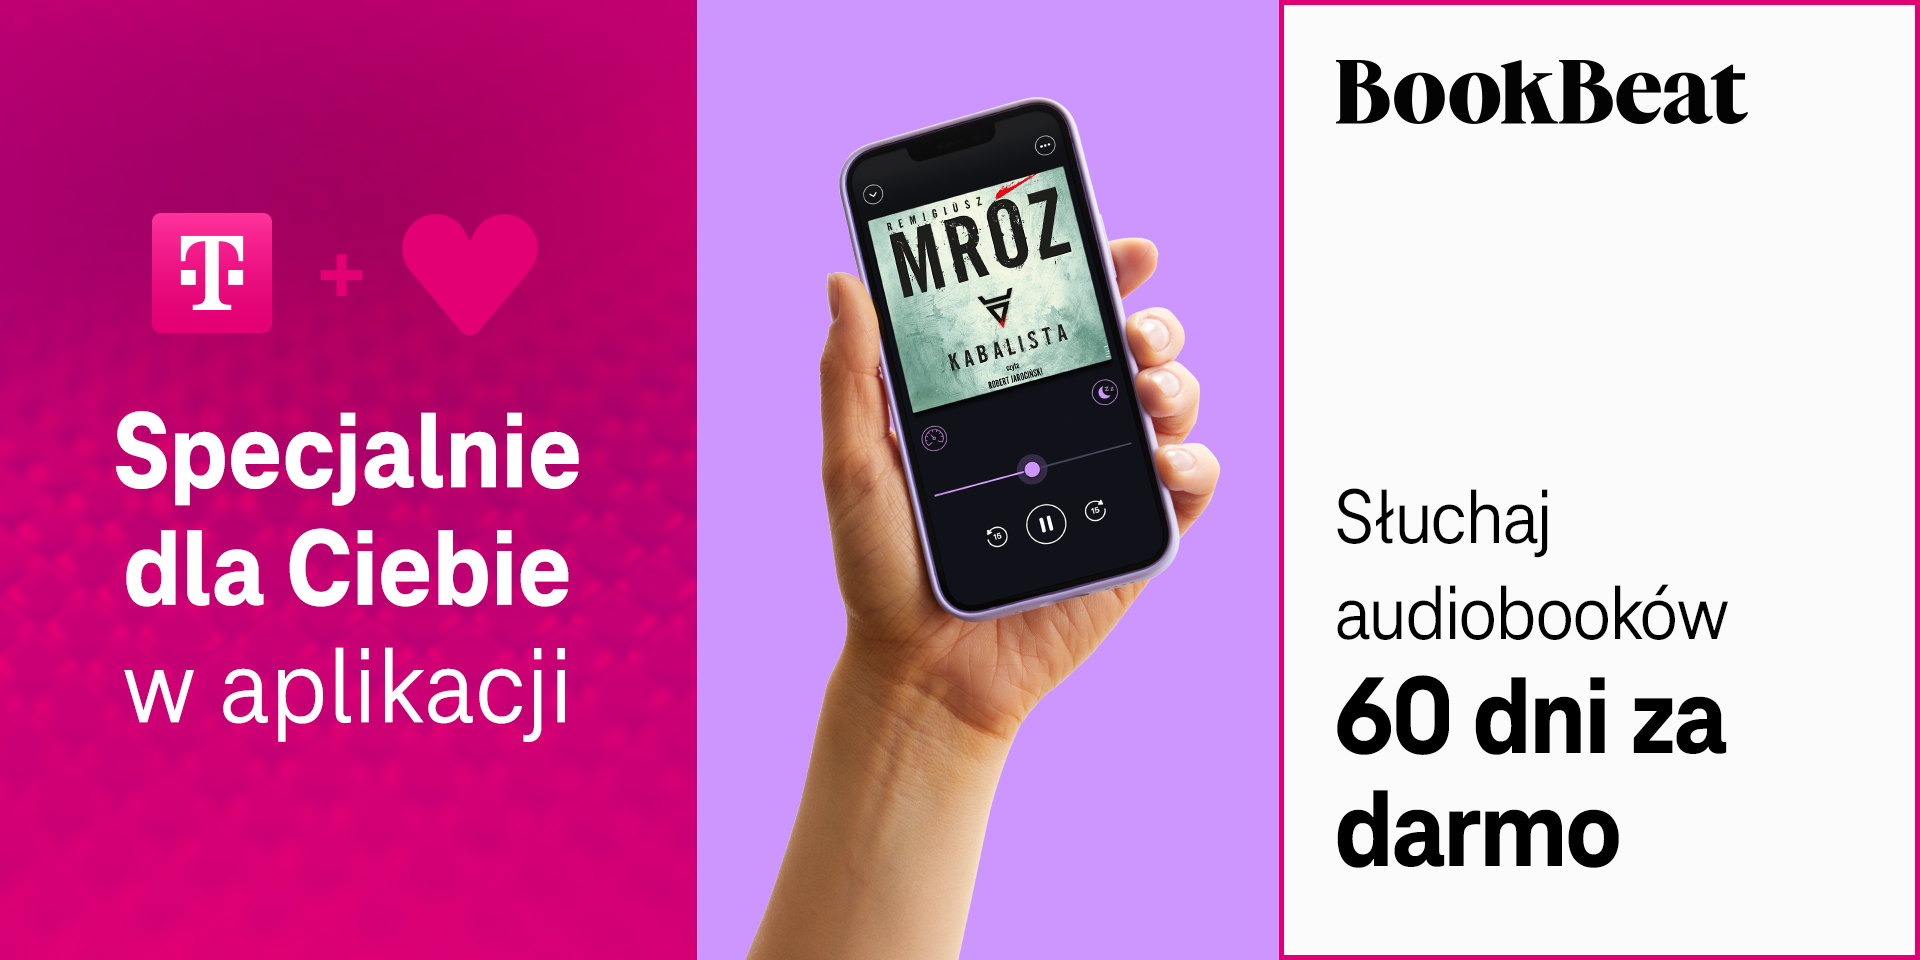 odbierz 60 dni bezplatnego dostepu do bookbeat w kolejnej odslonie bonusow od serca t mobile